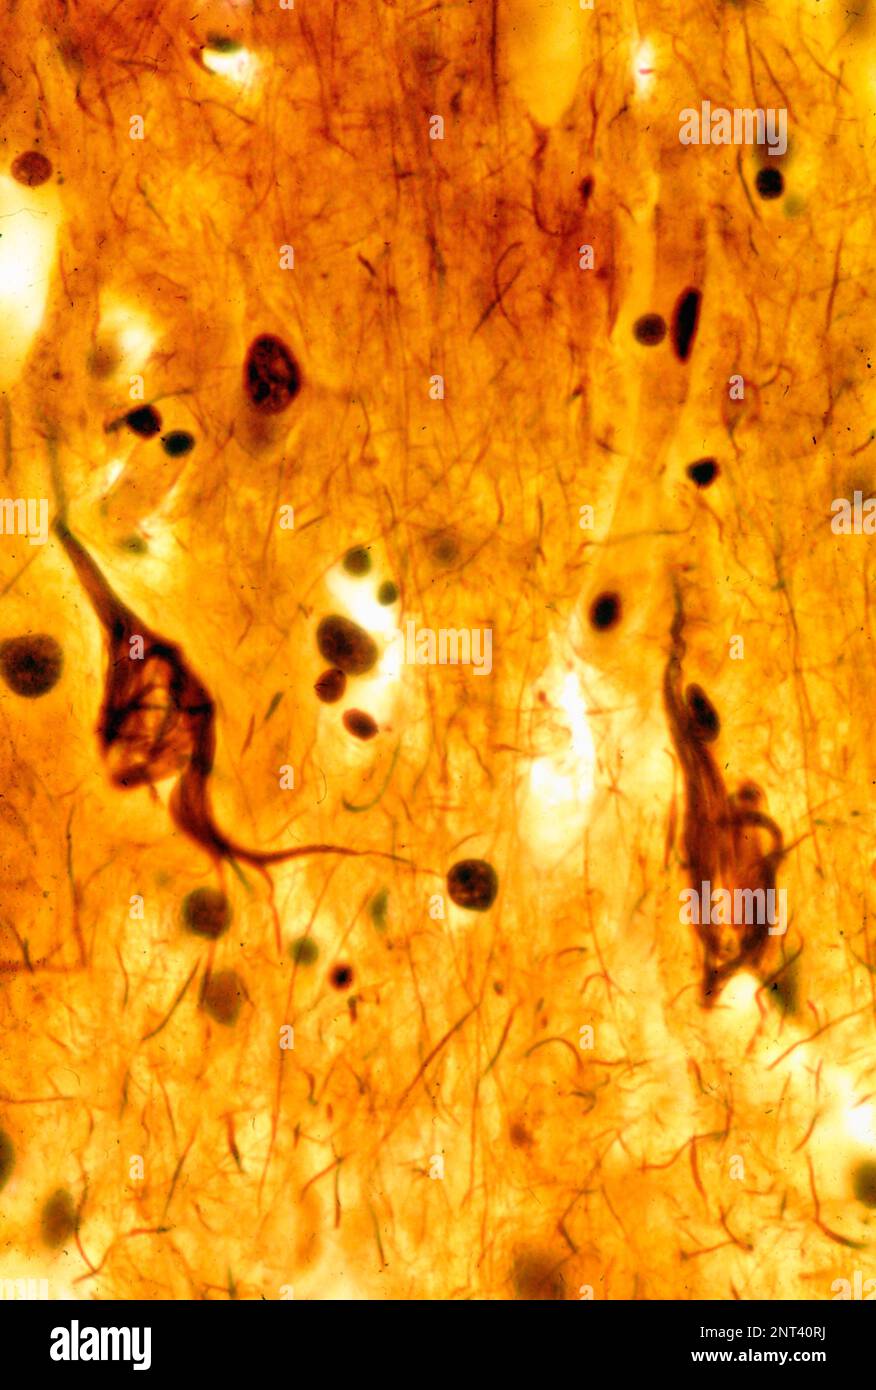 Micrographe léger d'un cortex cérébral humain montrant des enchevêtrements neurofibrillaires dans deux neurones pyramidaux. Les enchevêtrements neurofibrillaires (TNF) sont caractéristiques Banque D'Images